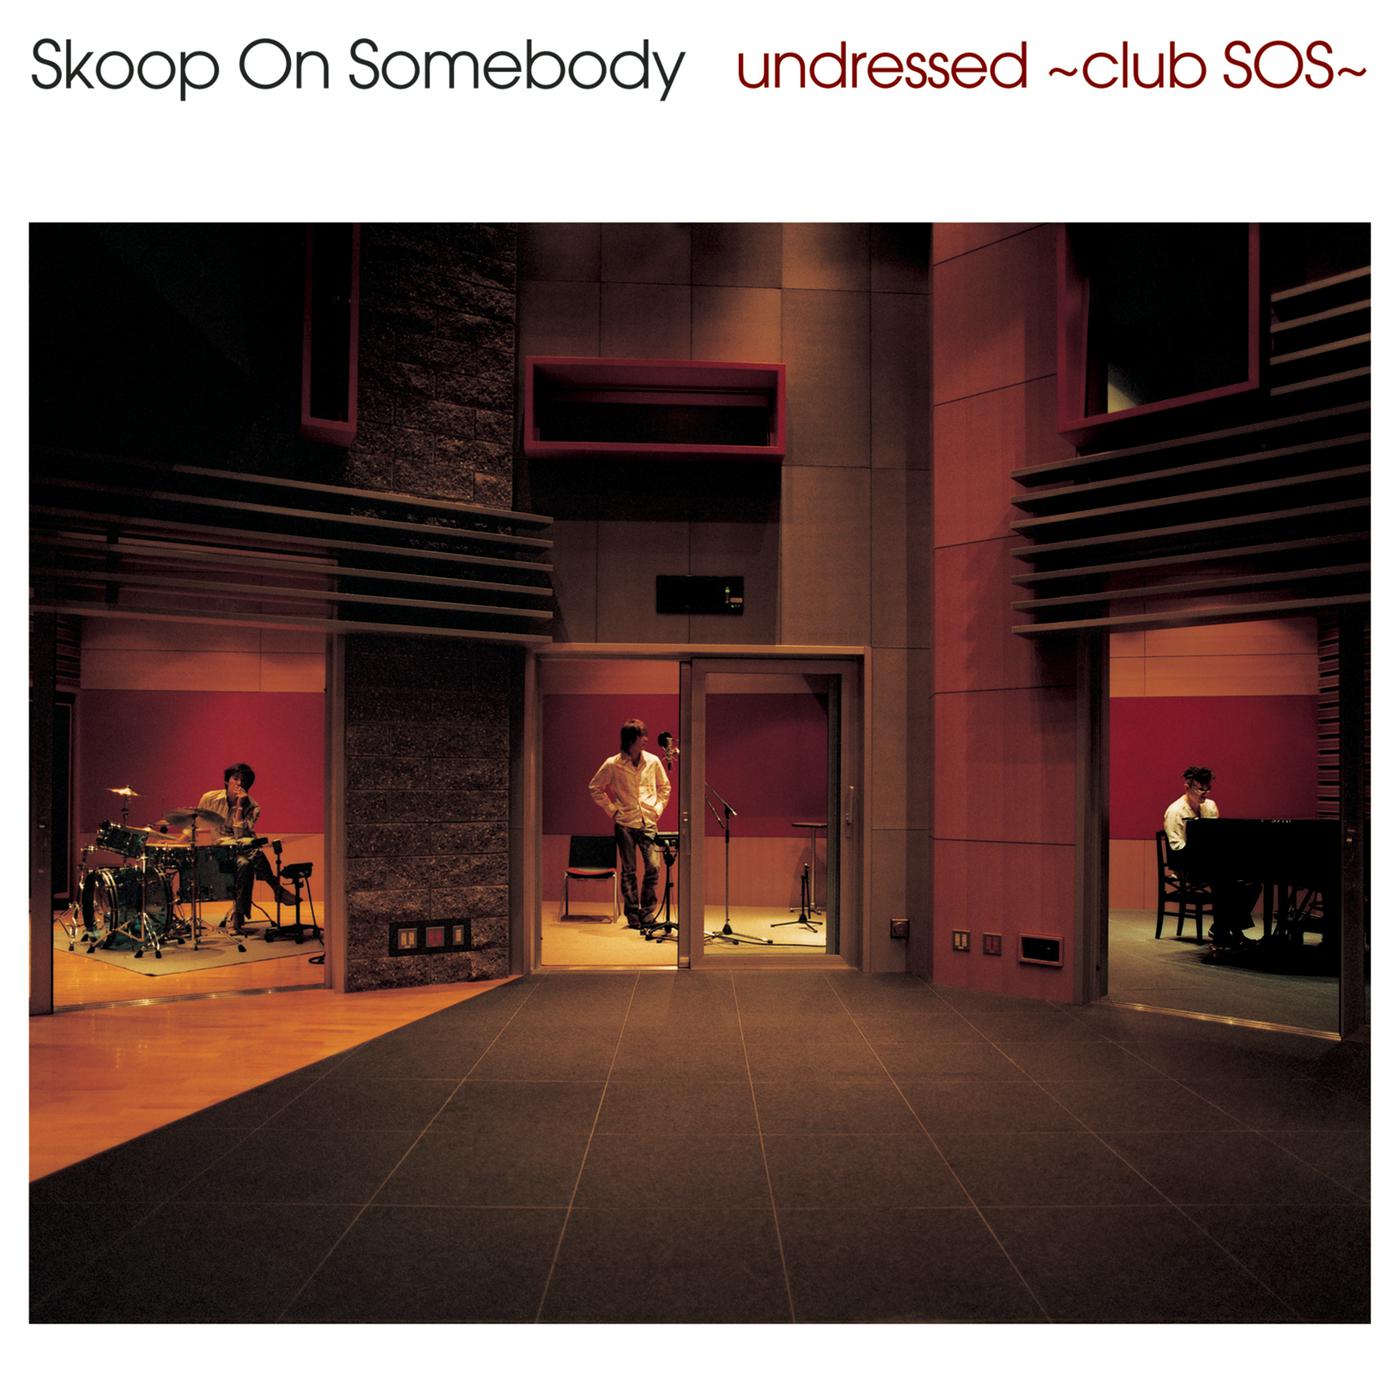 undressed club SOS